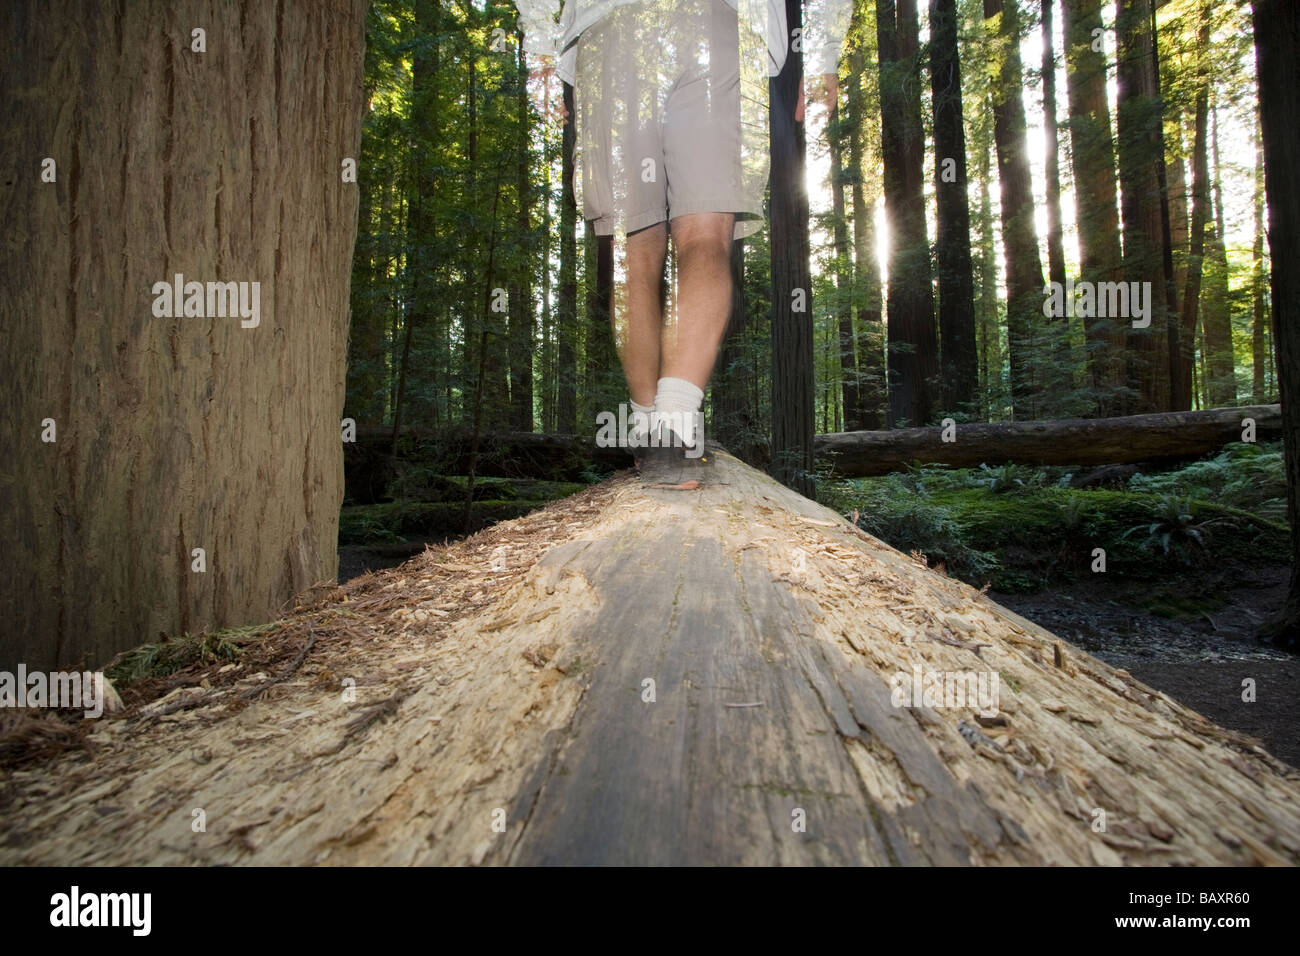 Persona caminando en la secuoya gigante caído en Humboldt Redwoods State Park, California Foto de stock